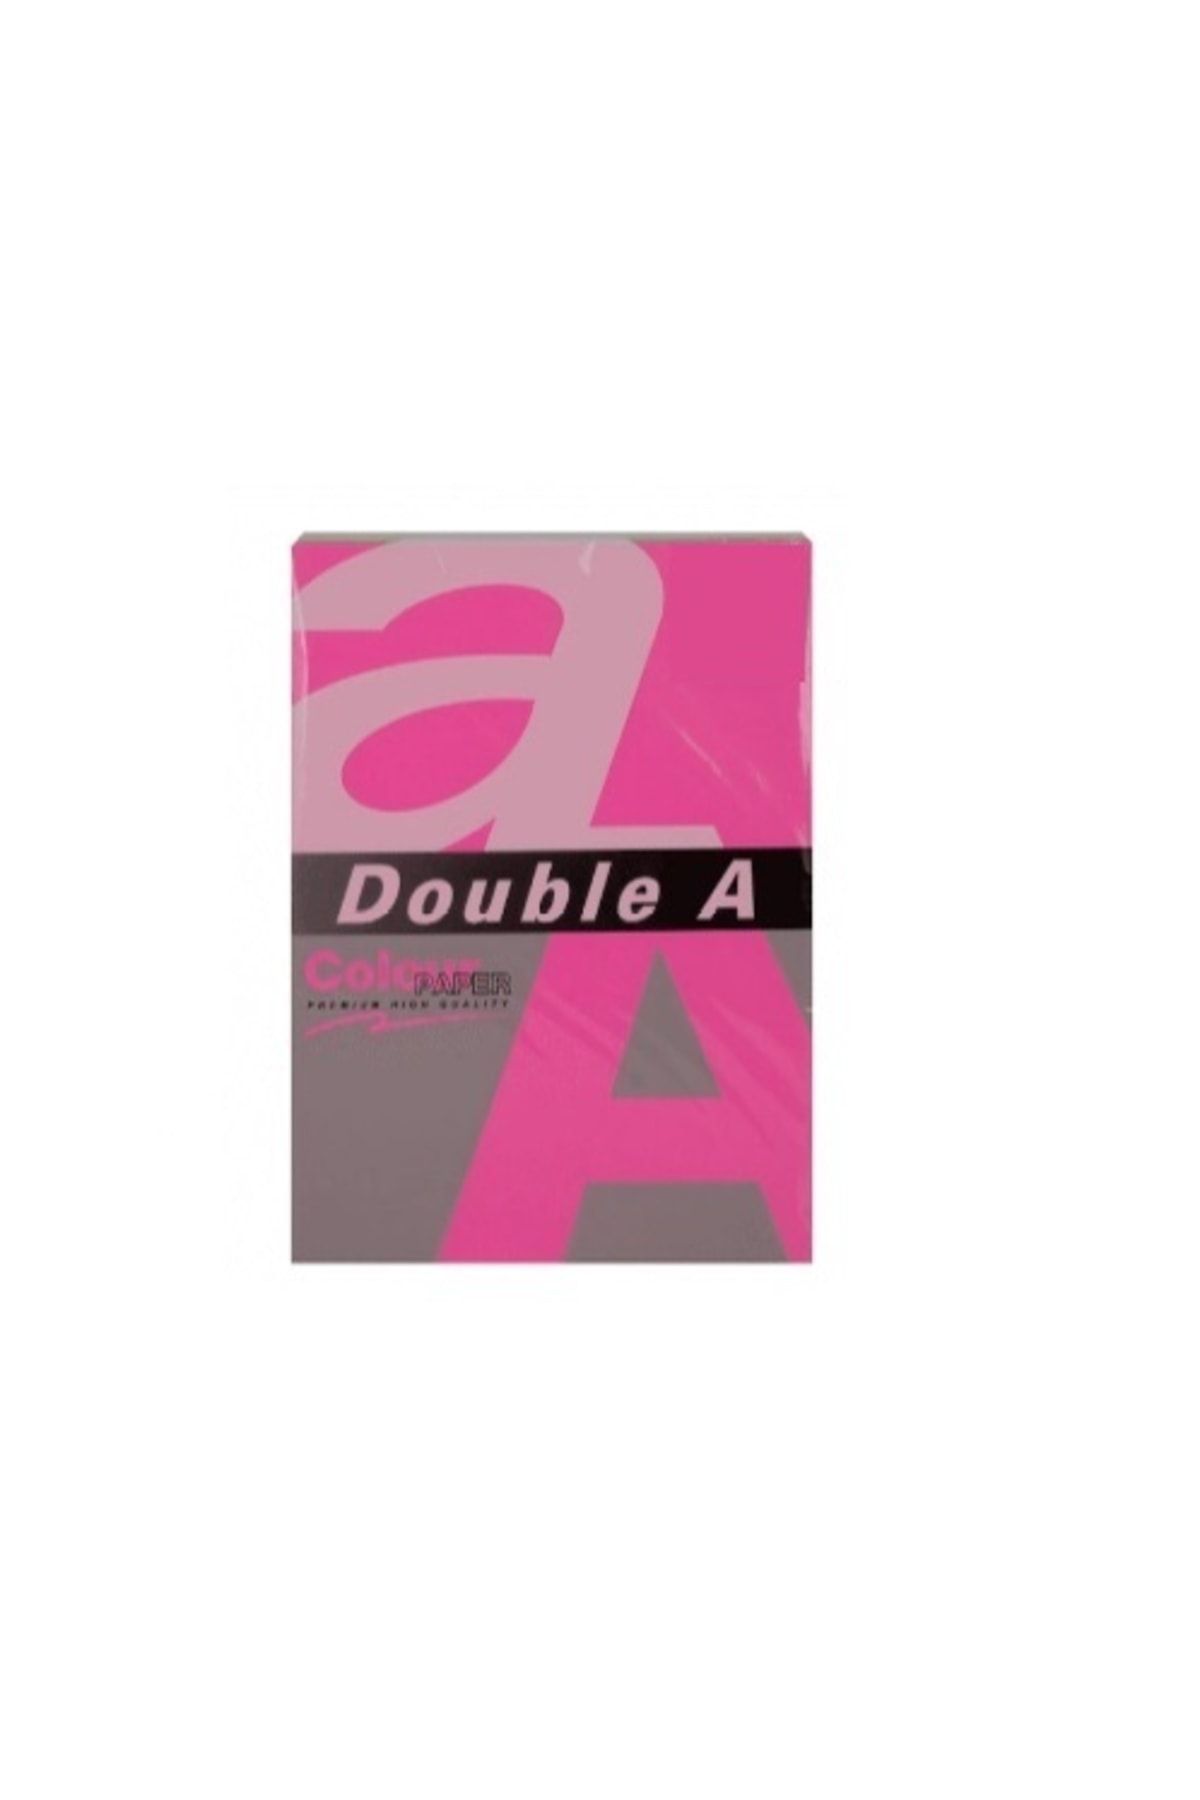 DOUBLE A Double-a Renkli Fotokopi Kağıdı A4 75 Gram Fosforlu Pembe (100 Lü Paket)